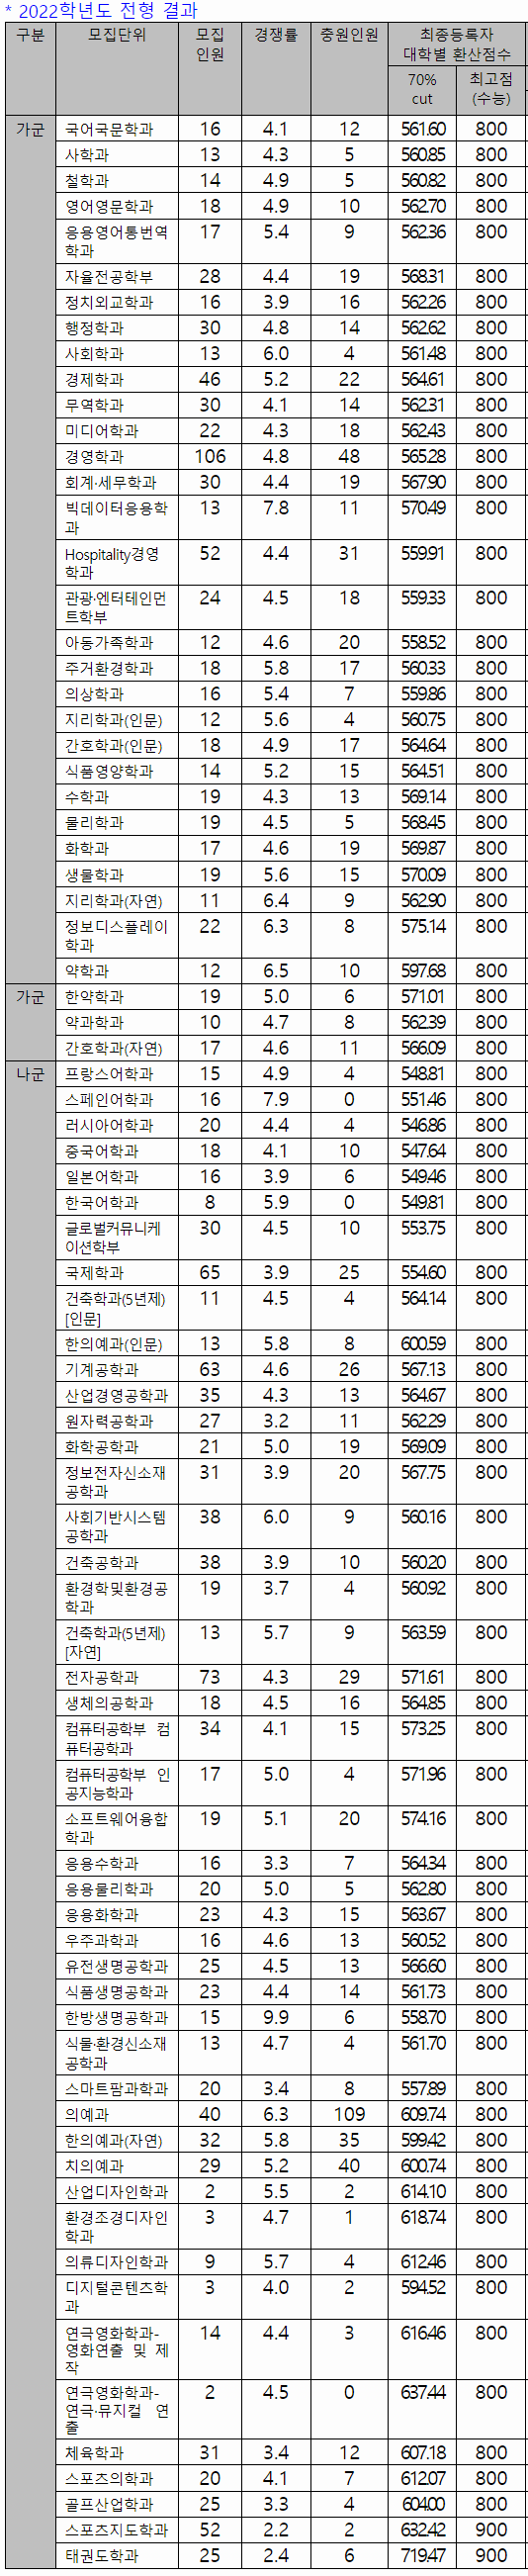 2022 경희대 정시등급 정시컷 입결 / 2023 경희대학 정시 변환표준점수표 : 네이버 블로그